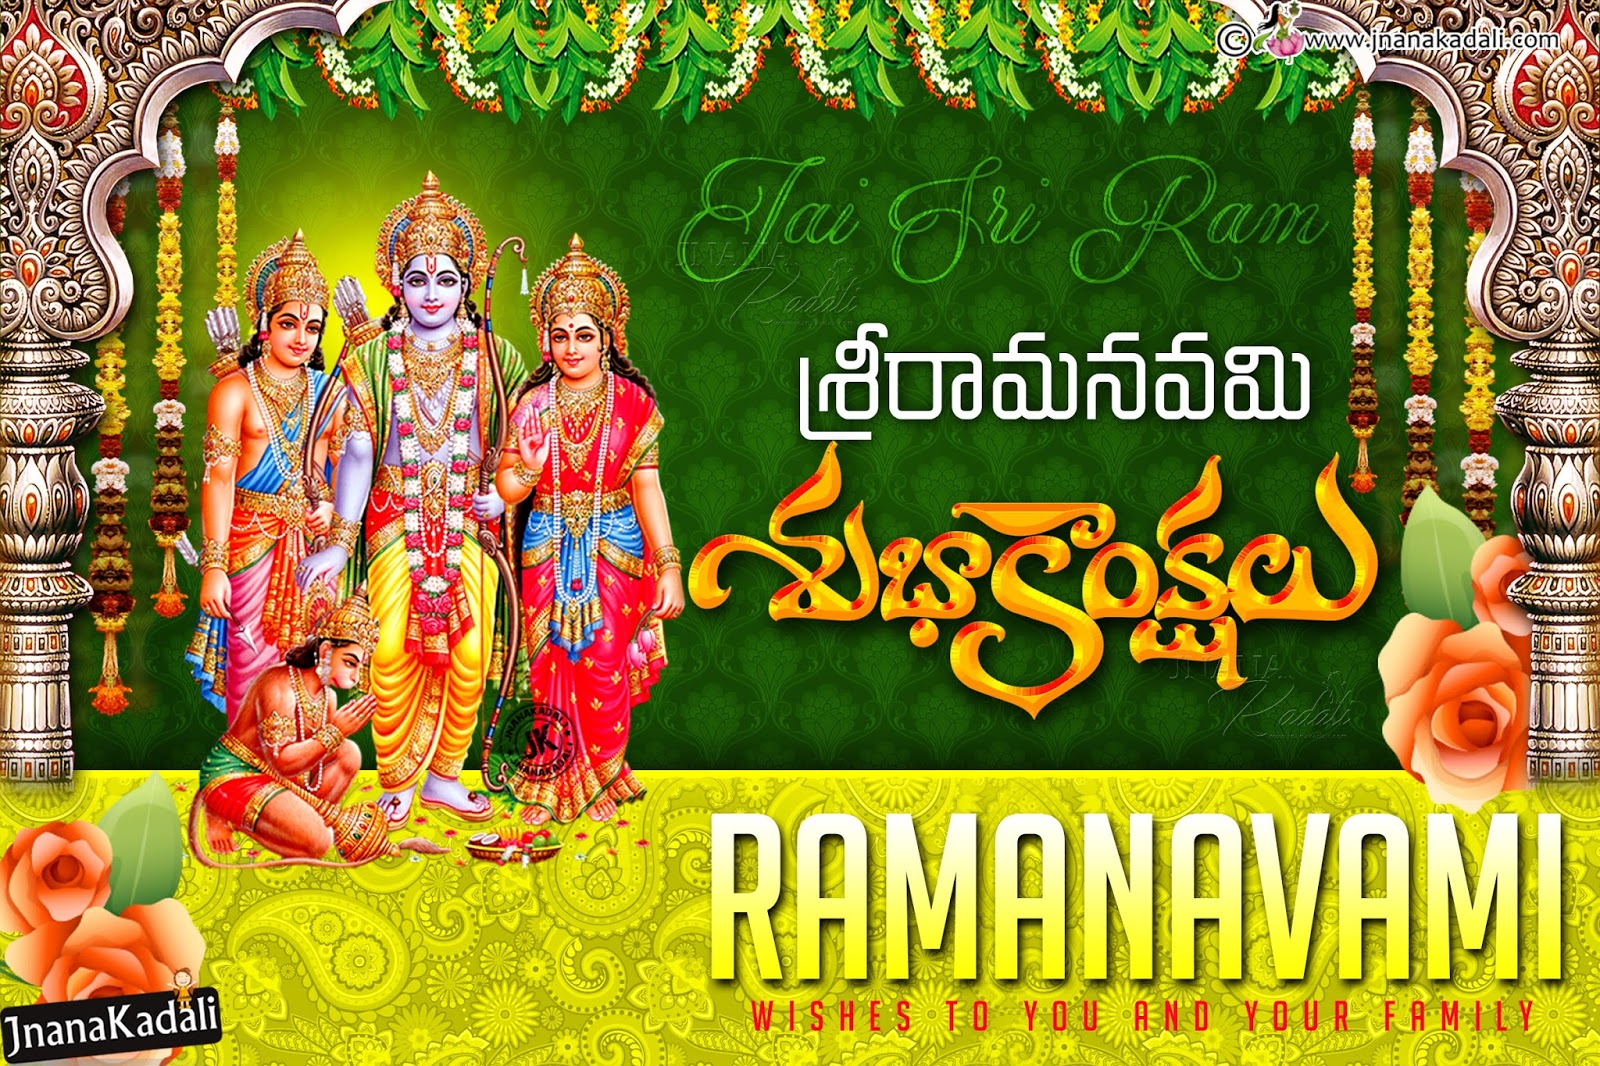 Sri Ramanavami 2018 Greetings wallpapers in Telugu Free download ...